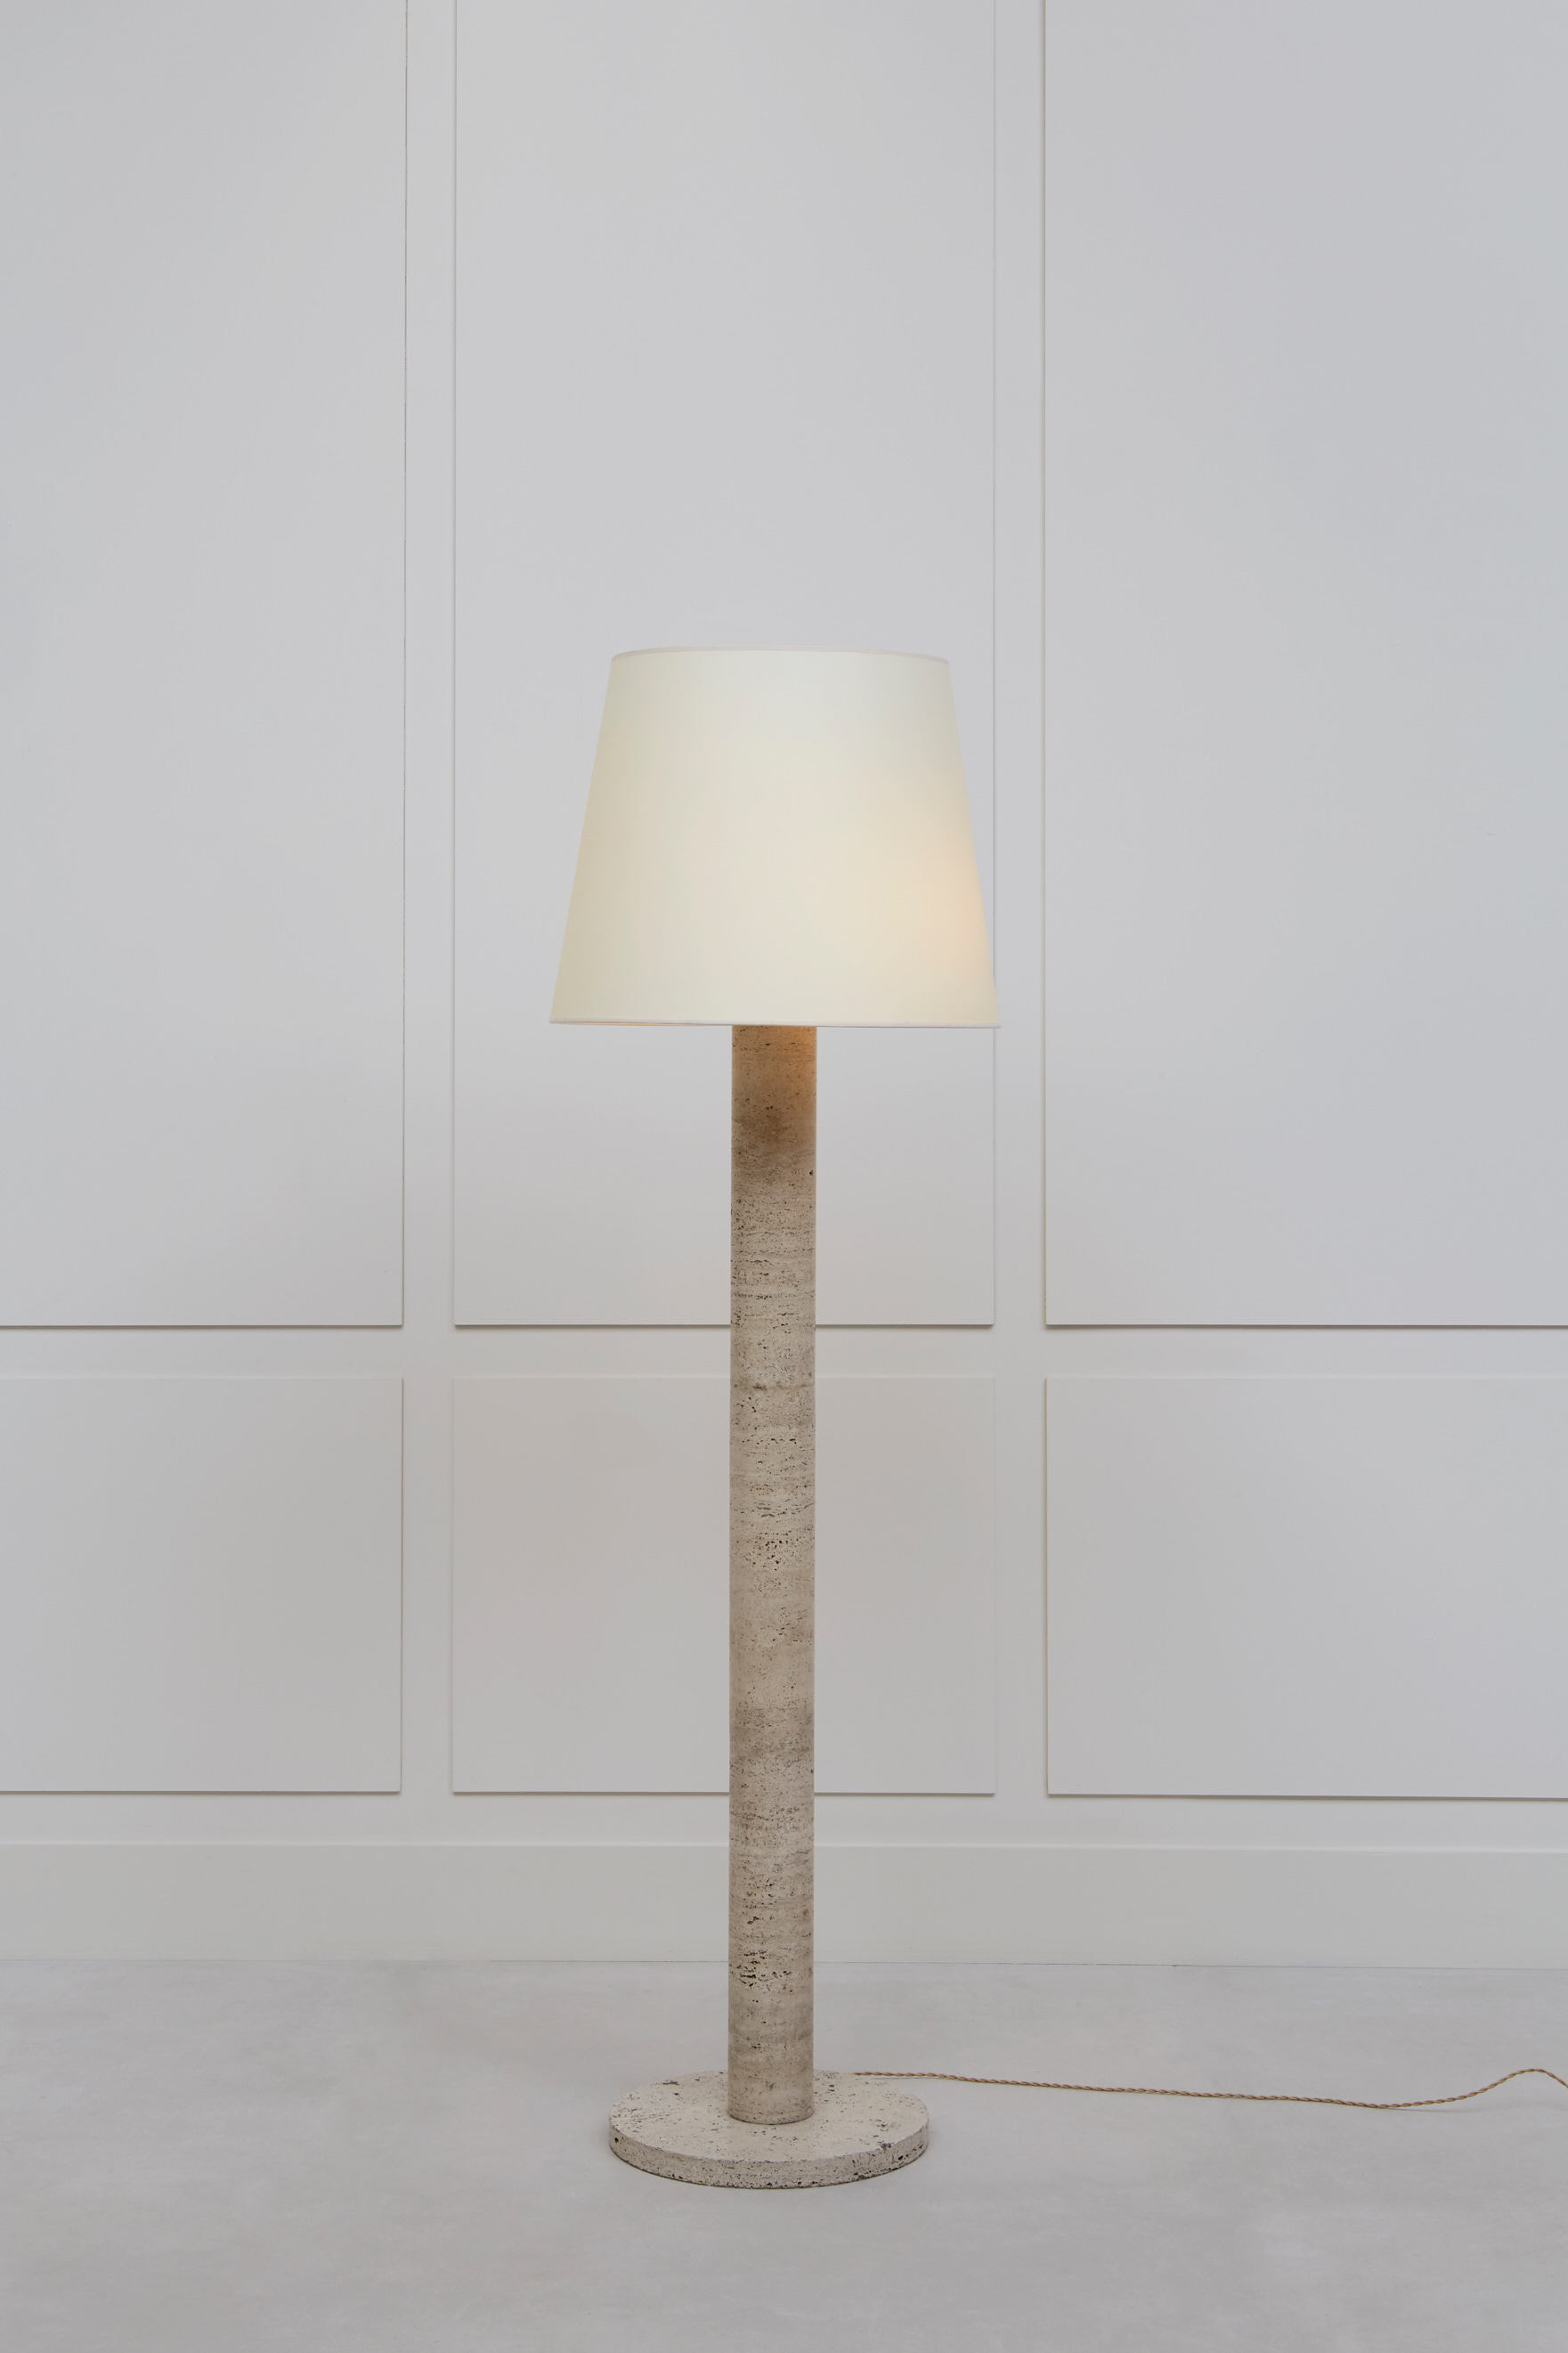 Michel Roux-Spitz, floor lamp, vue 01